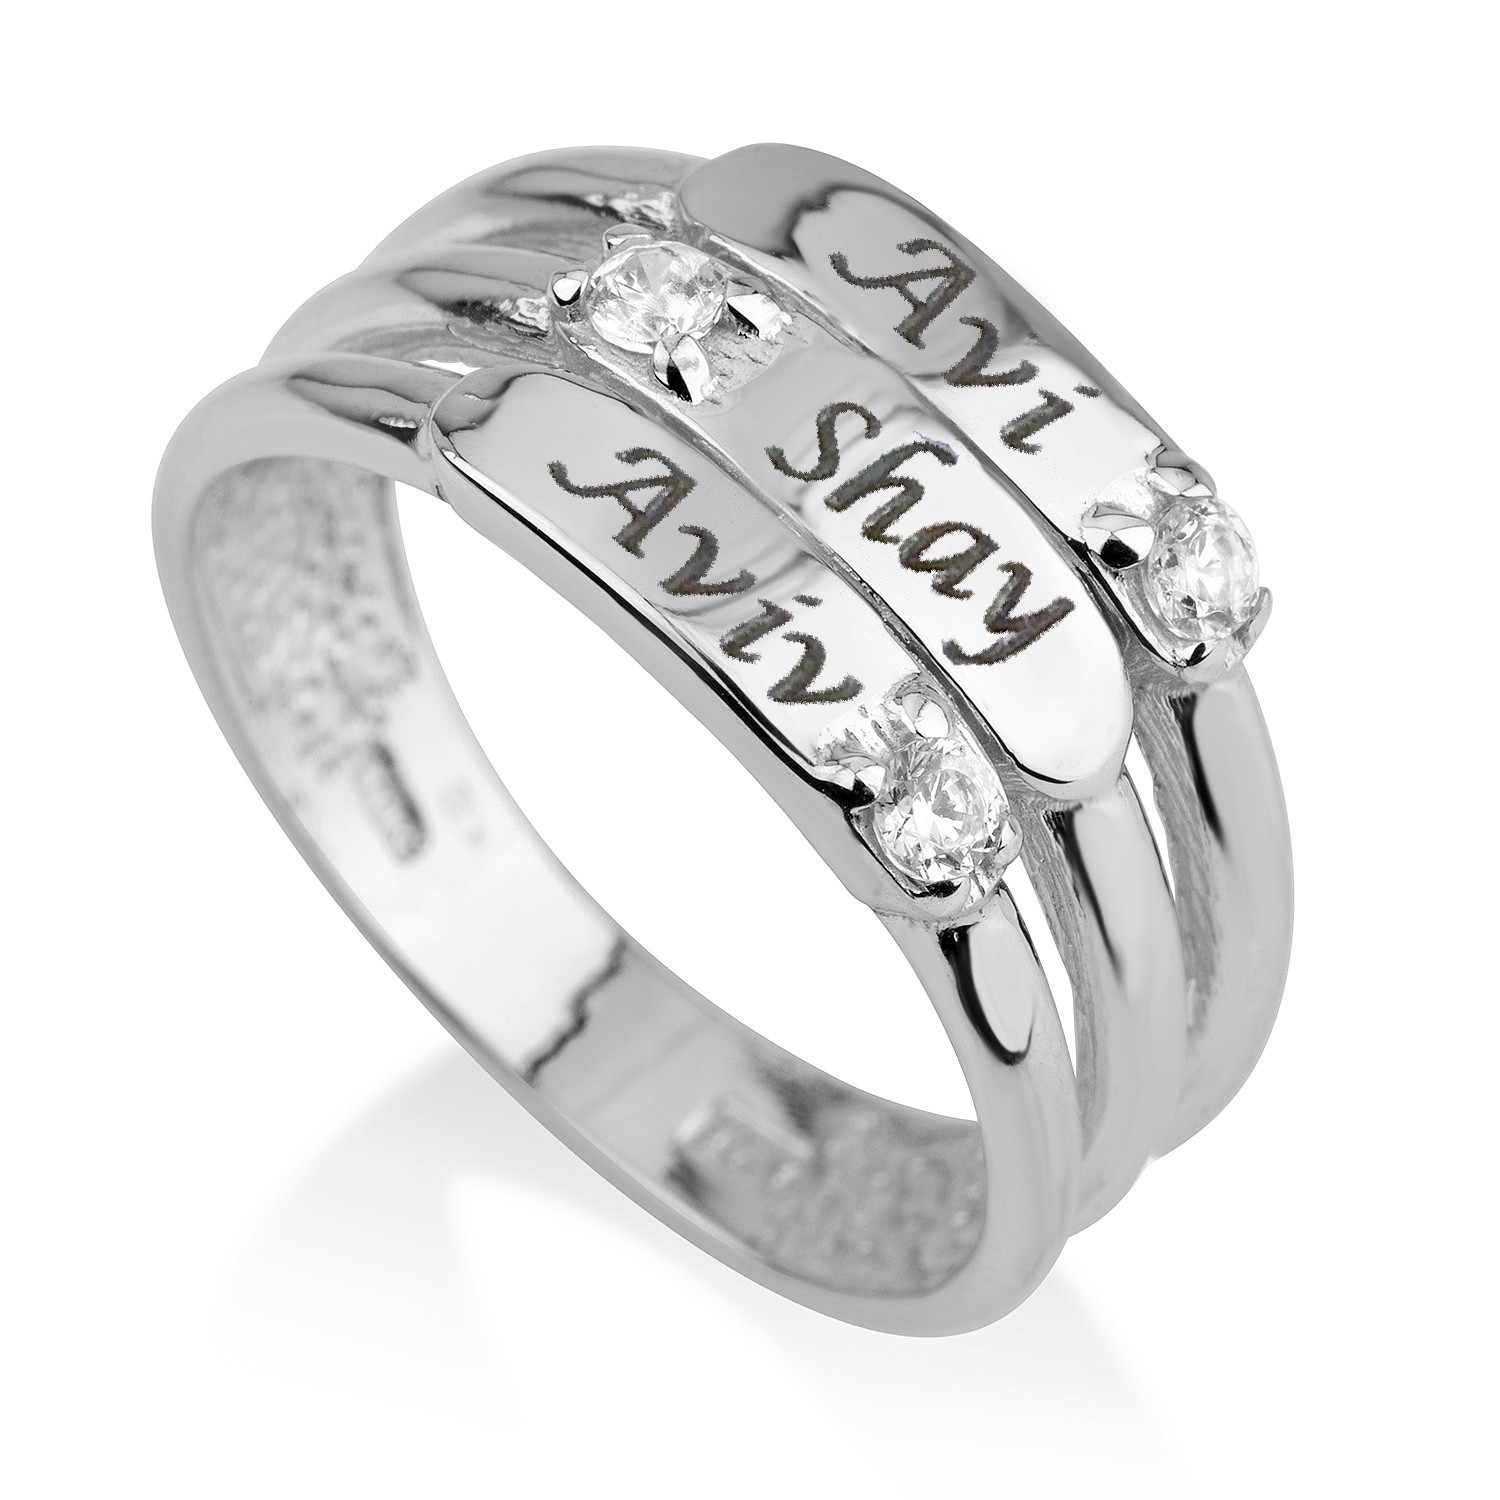  טבעת חריטה 3 פסים - זהב אמיתי 14 קראט בשיבוץ יהלומים אמיתיים טבעיים דגם 3123